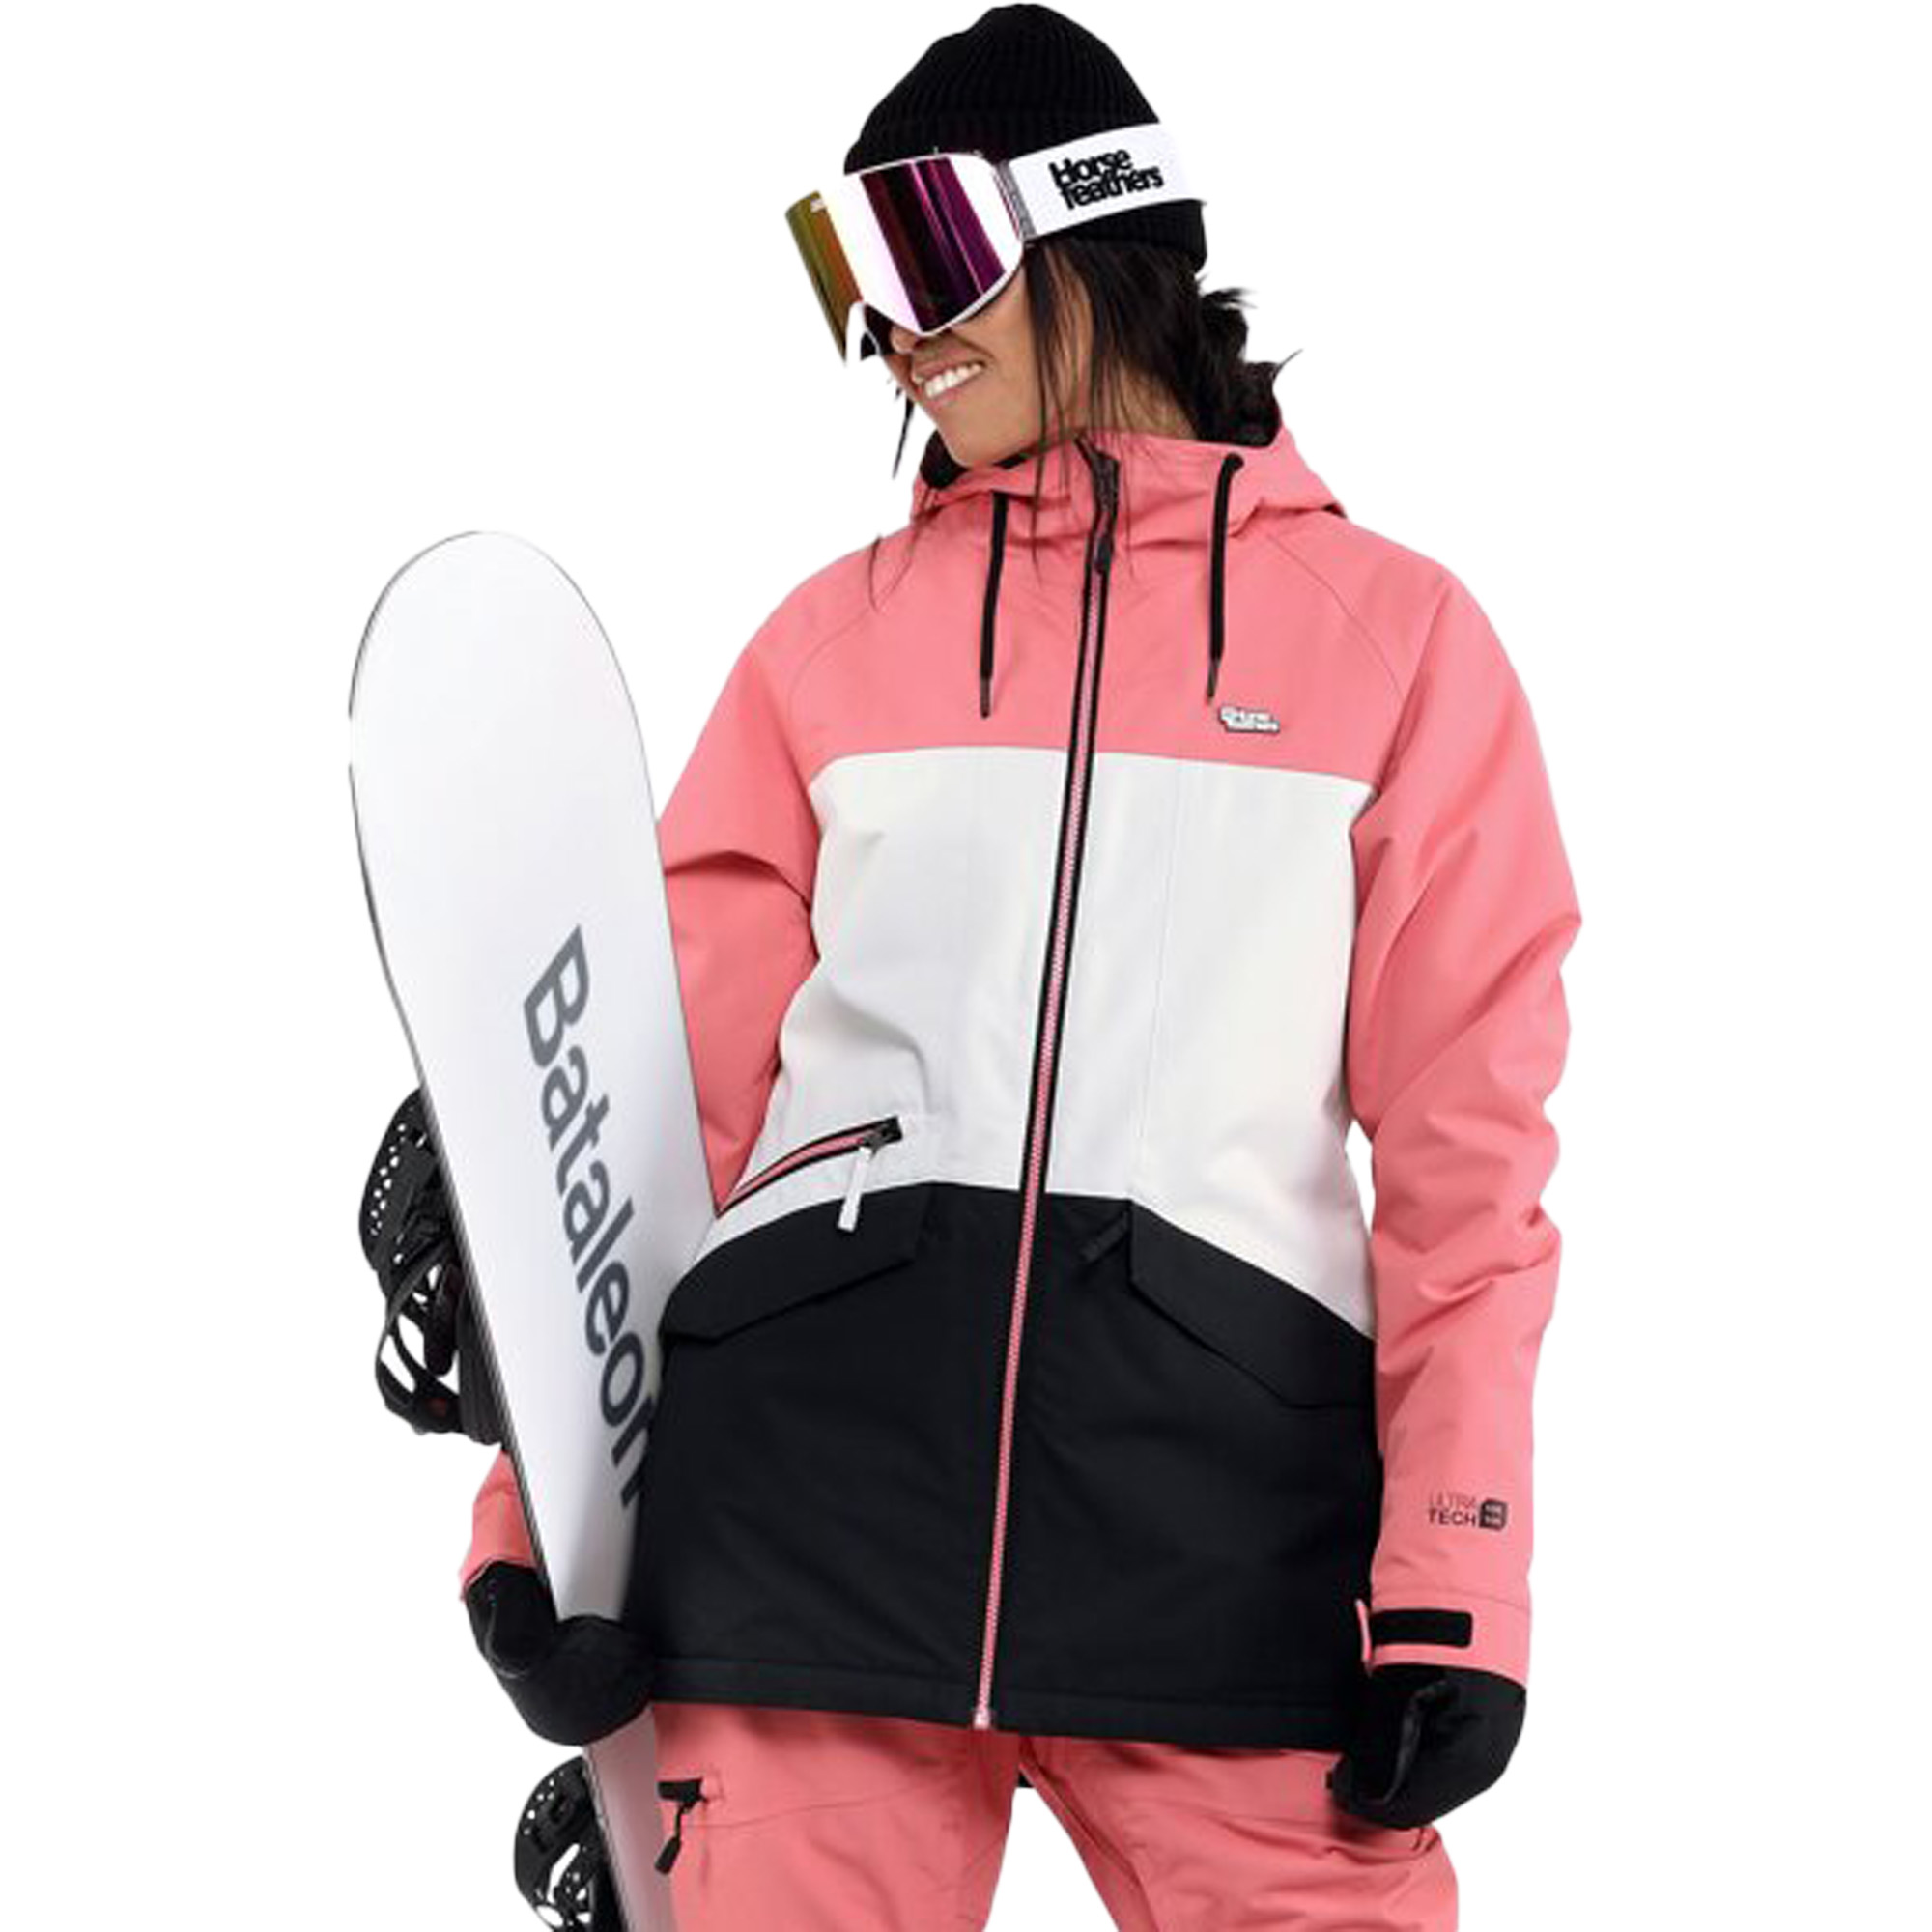 Horsefeathers Arianna Women's Ski/Snowboard Jacket